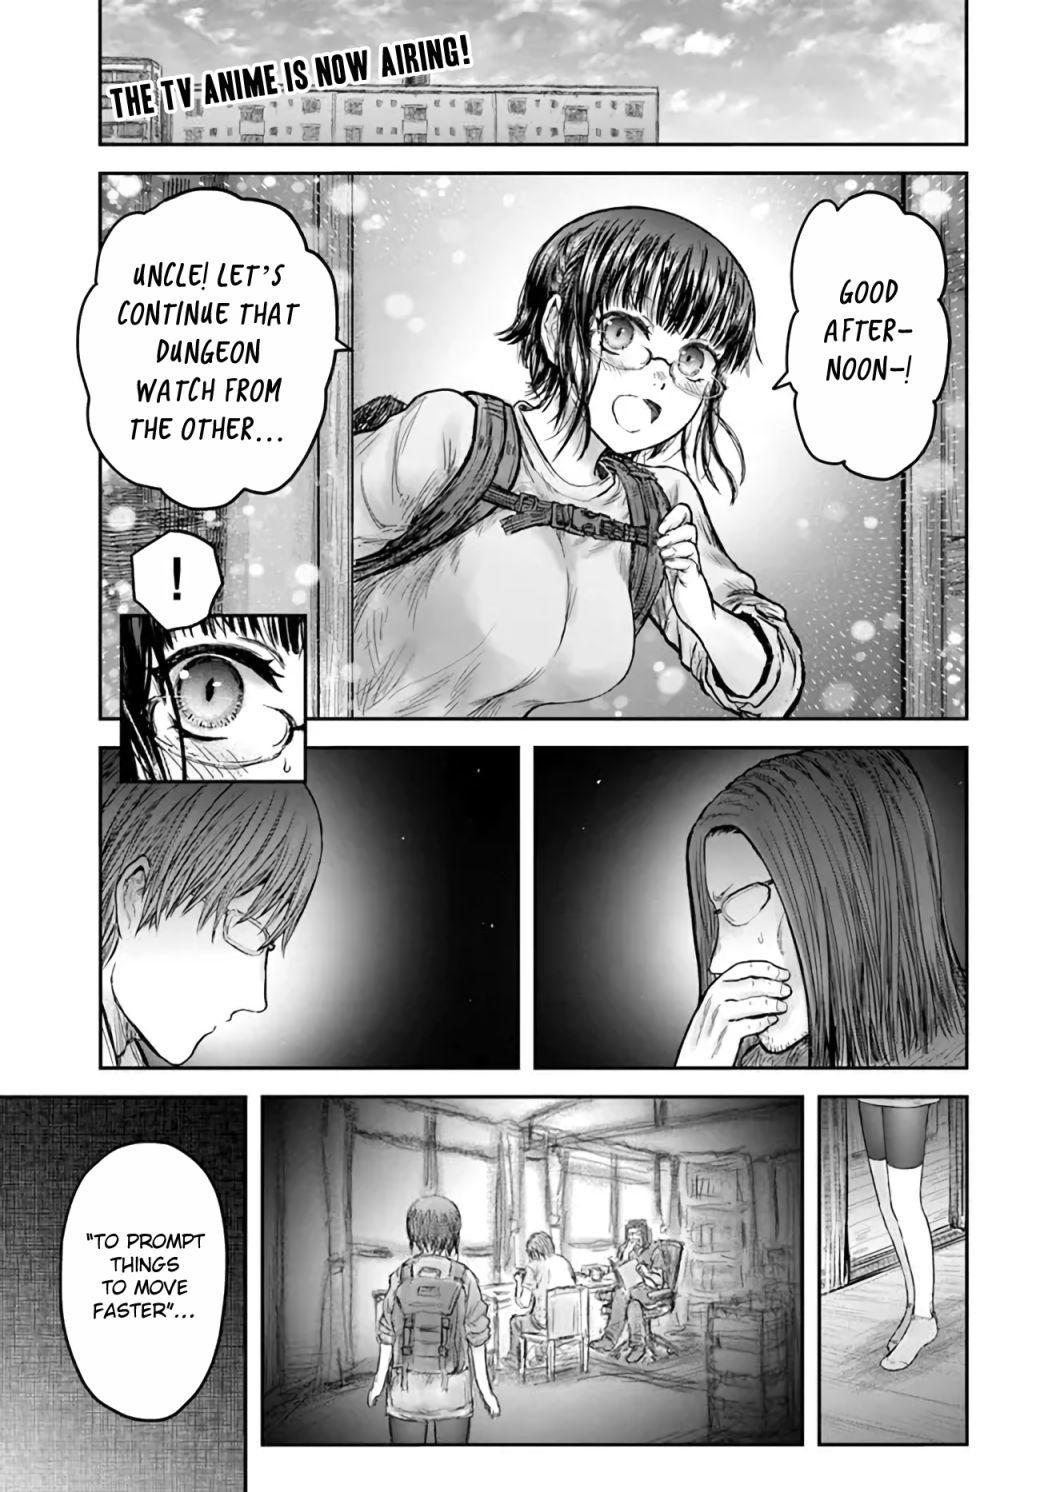 Isekai Ojisan, Chapter 49 - Isekai Ojisan Manga Online